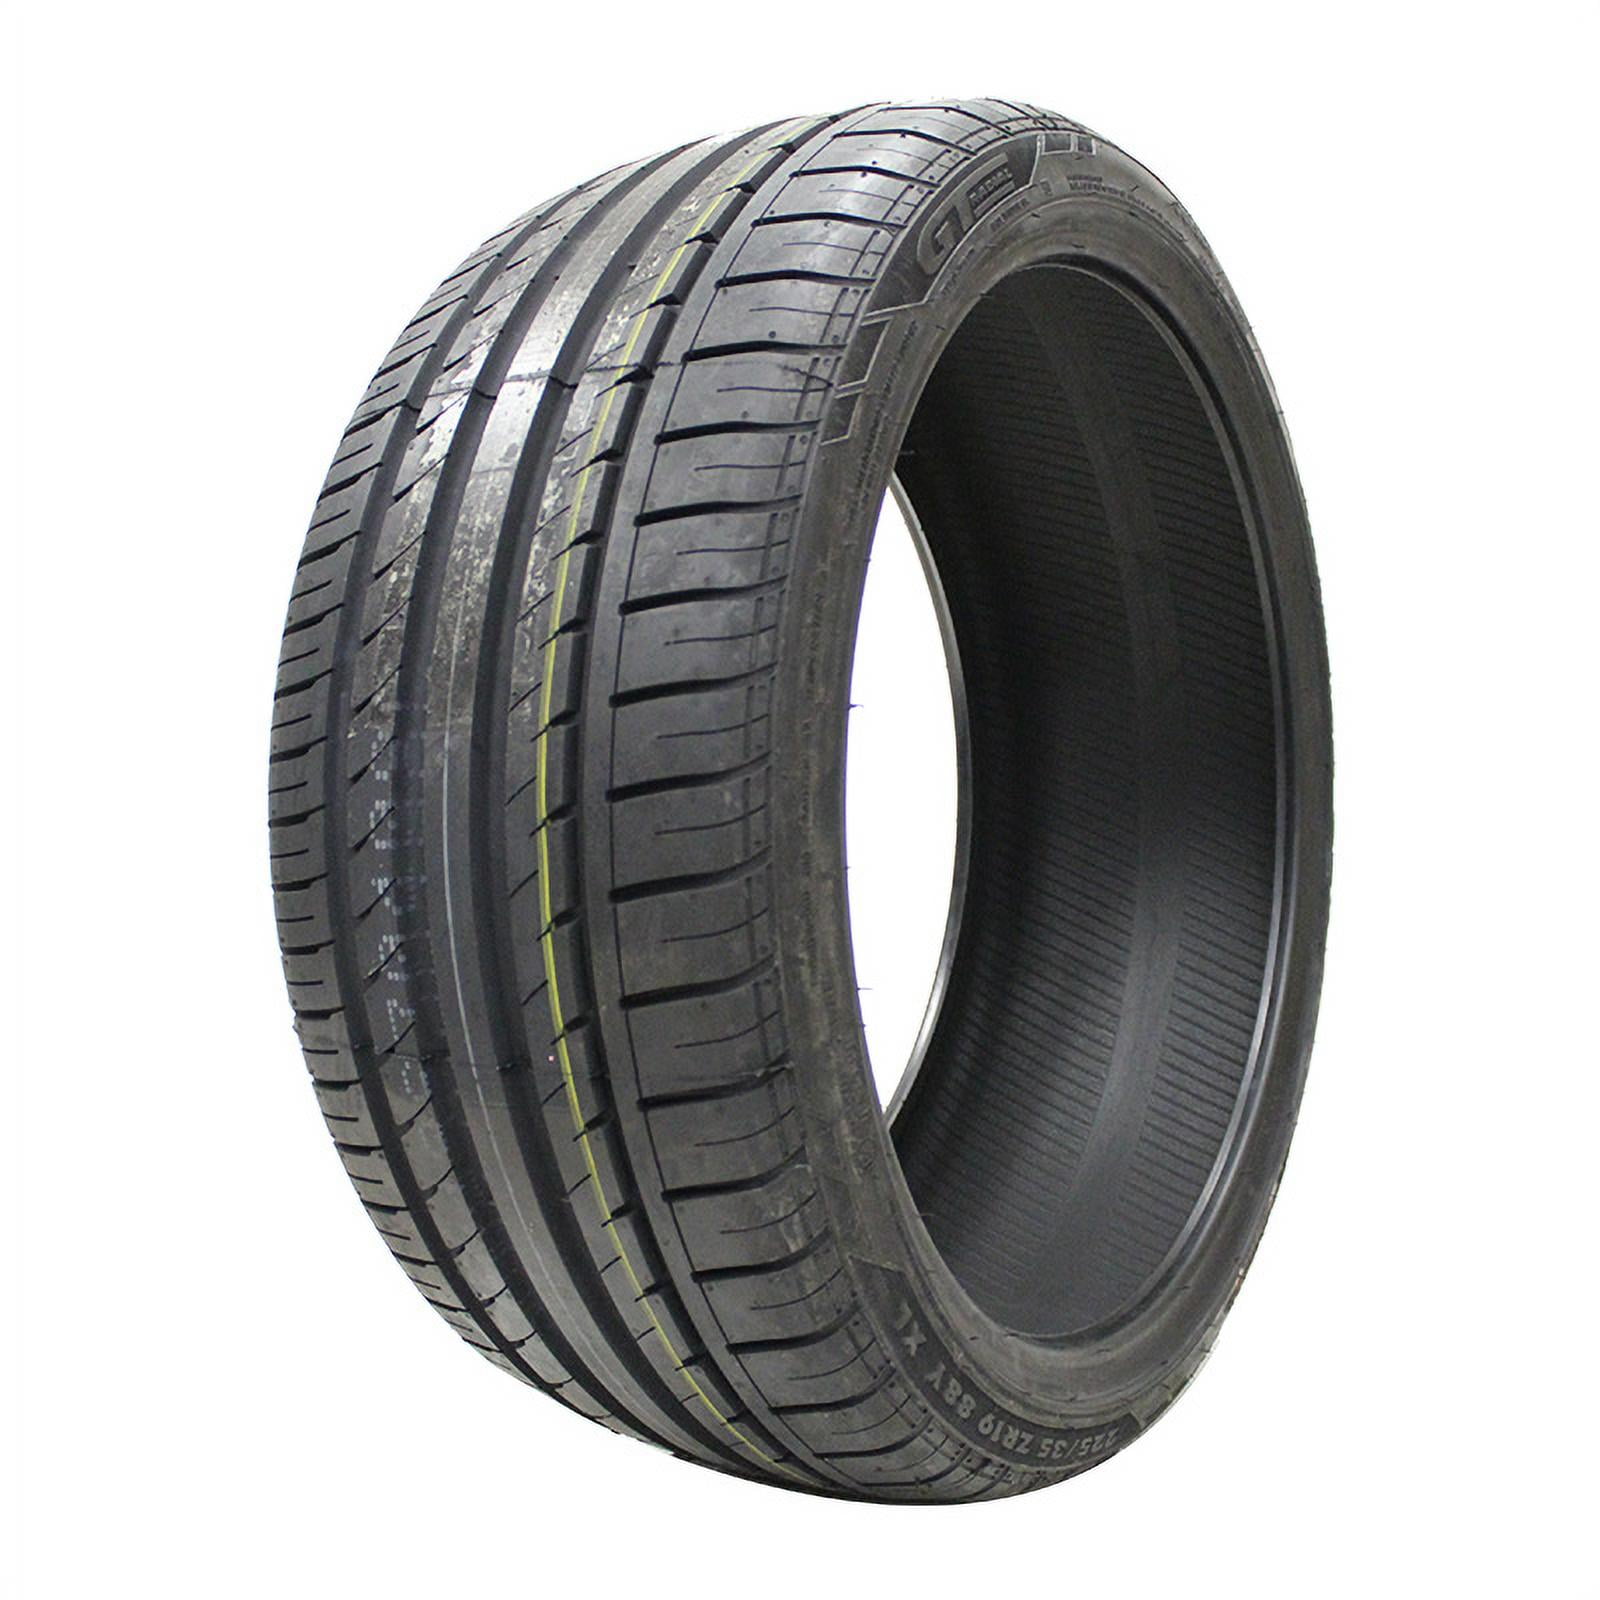 RFT; rsc 2 neumáticos de verano Pirelli Scorpion verde 255/50 r19 107w r2503 